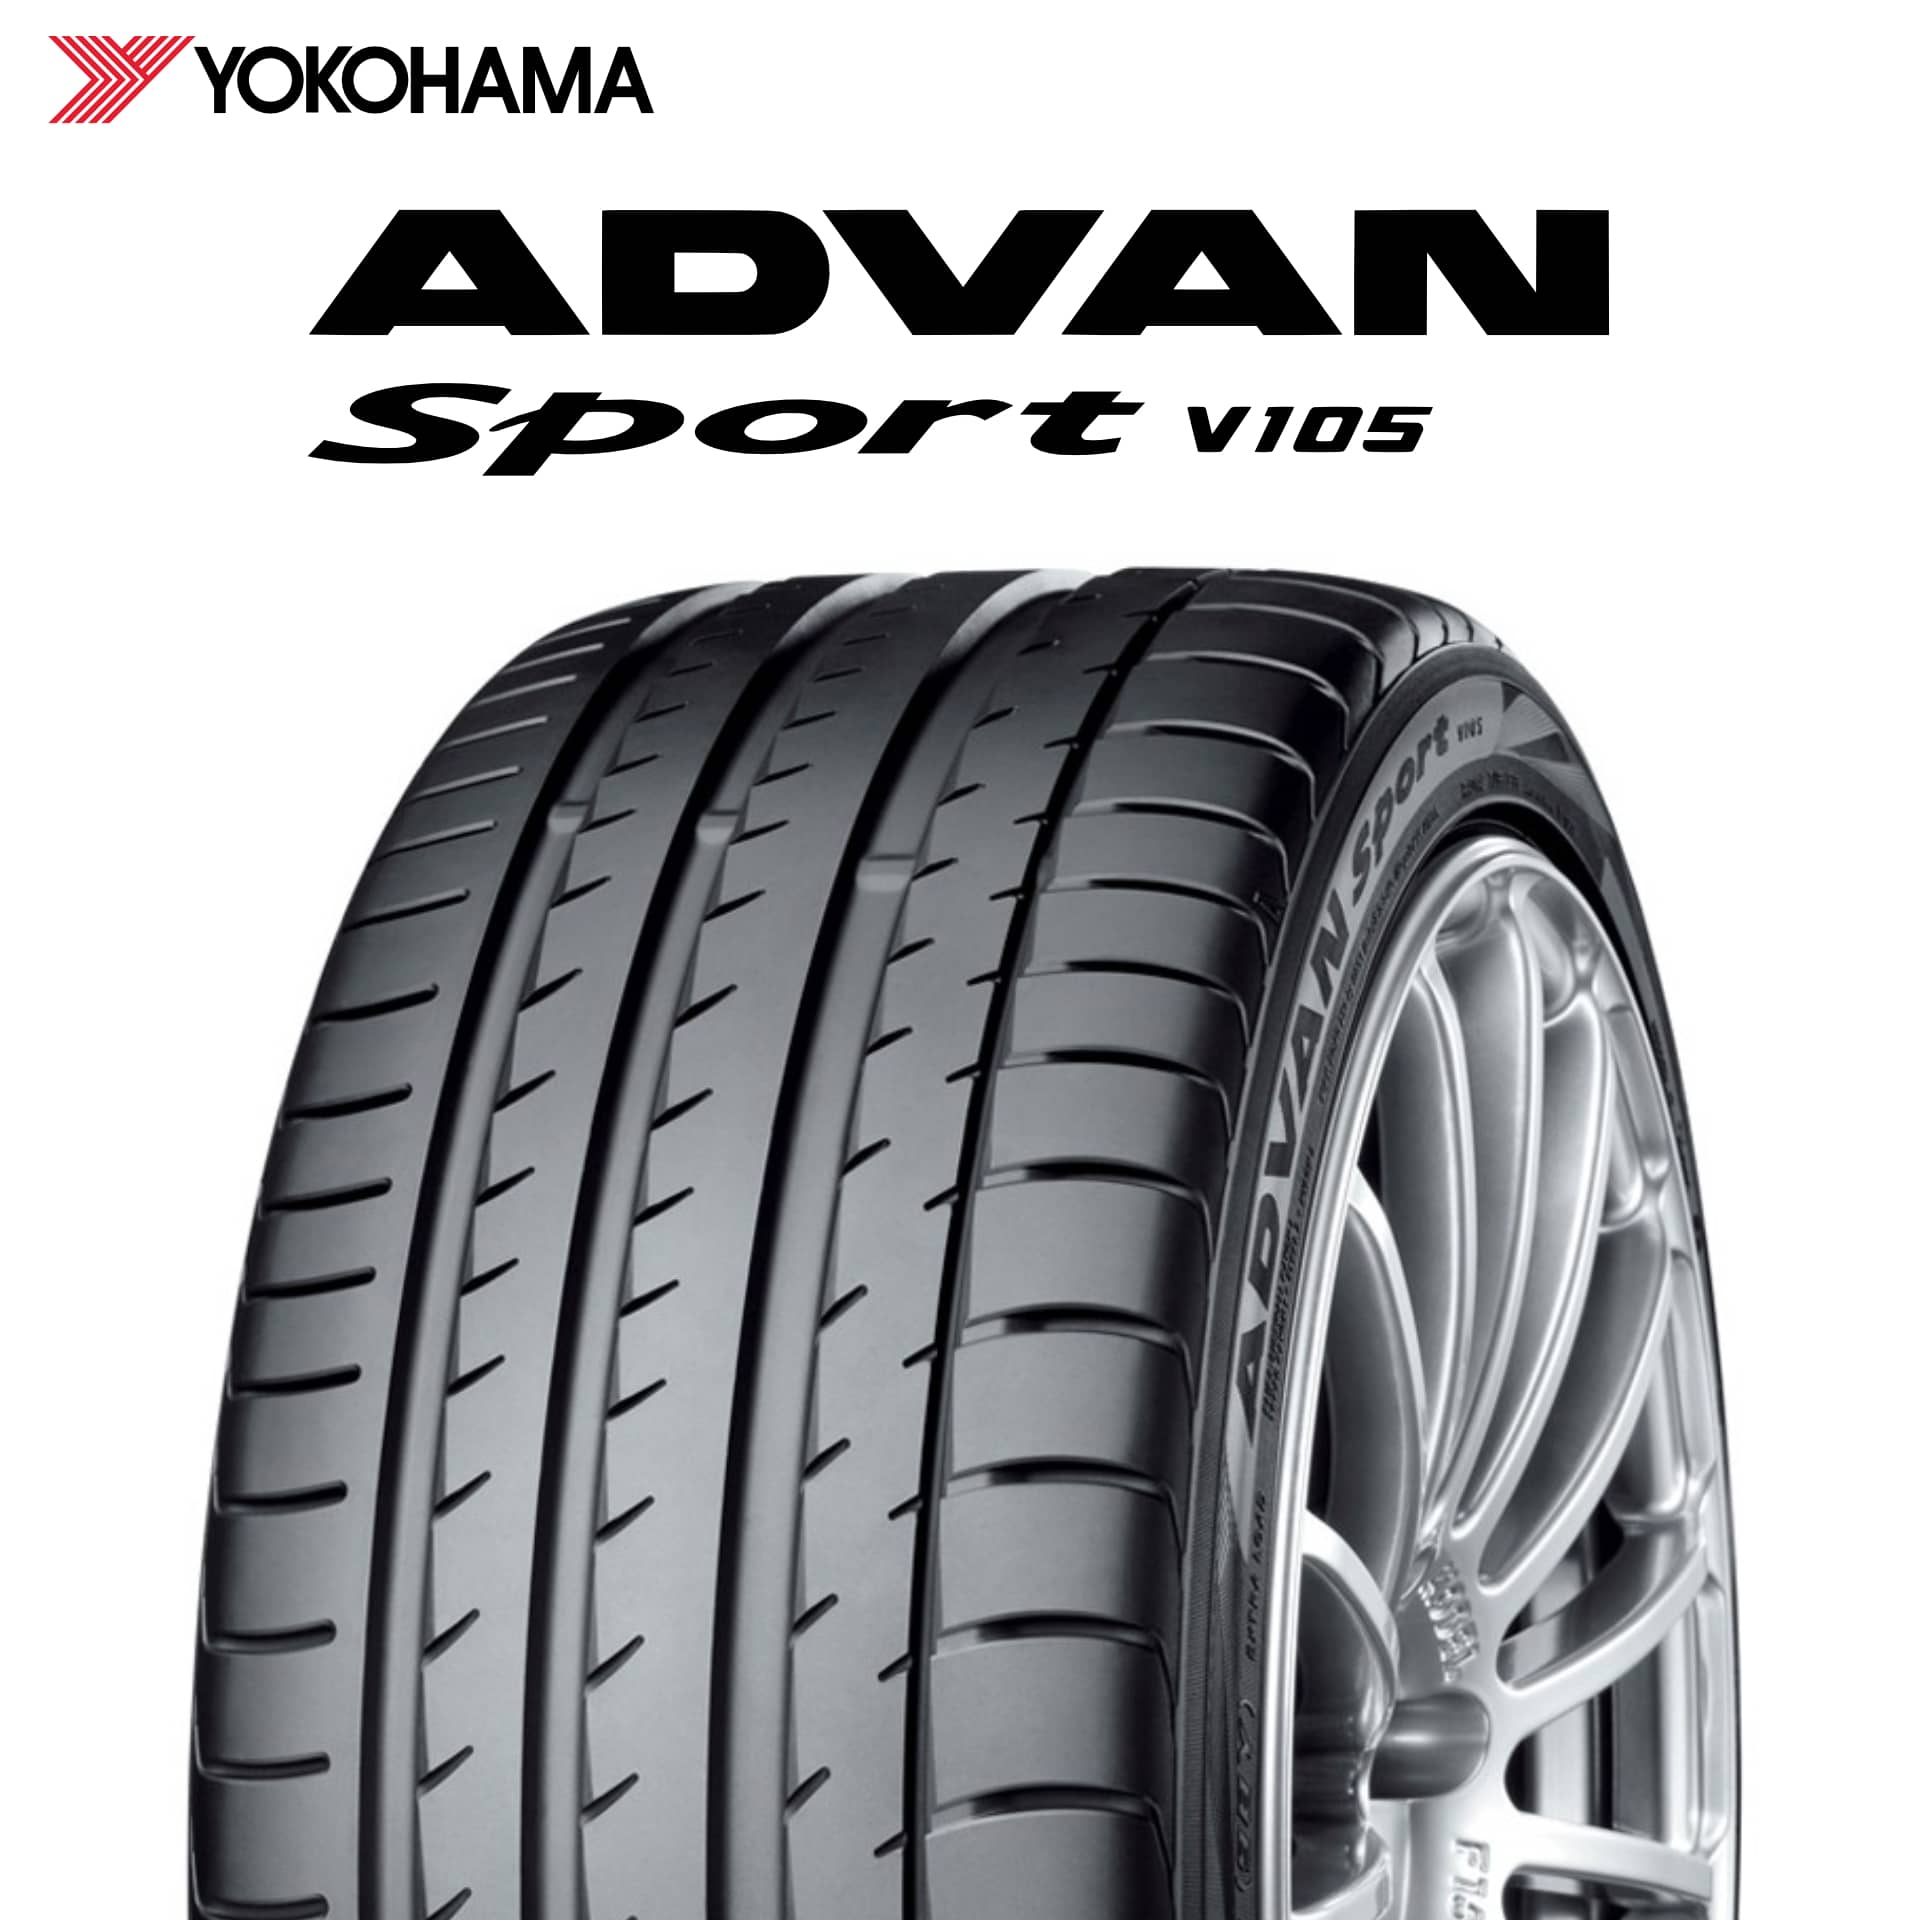 22年製 日本製 235/55R19 101V MO ヨコハマタイヤ ADVAN Sport V105 (アドバン スポーツV105) メルセデスベンツ承認タイヤ 19インチ 新品